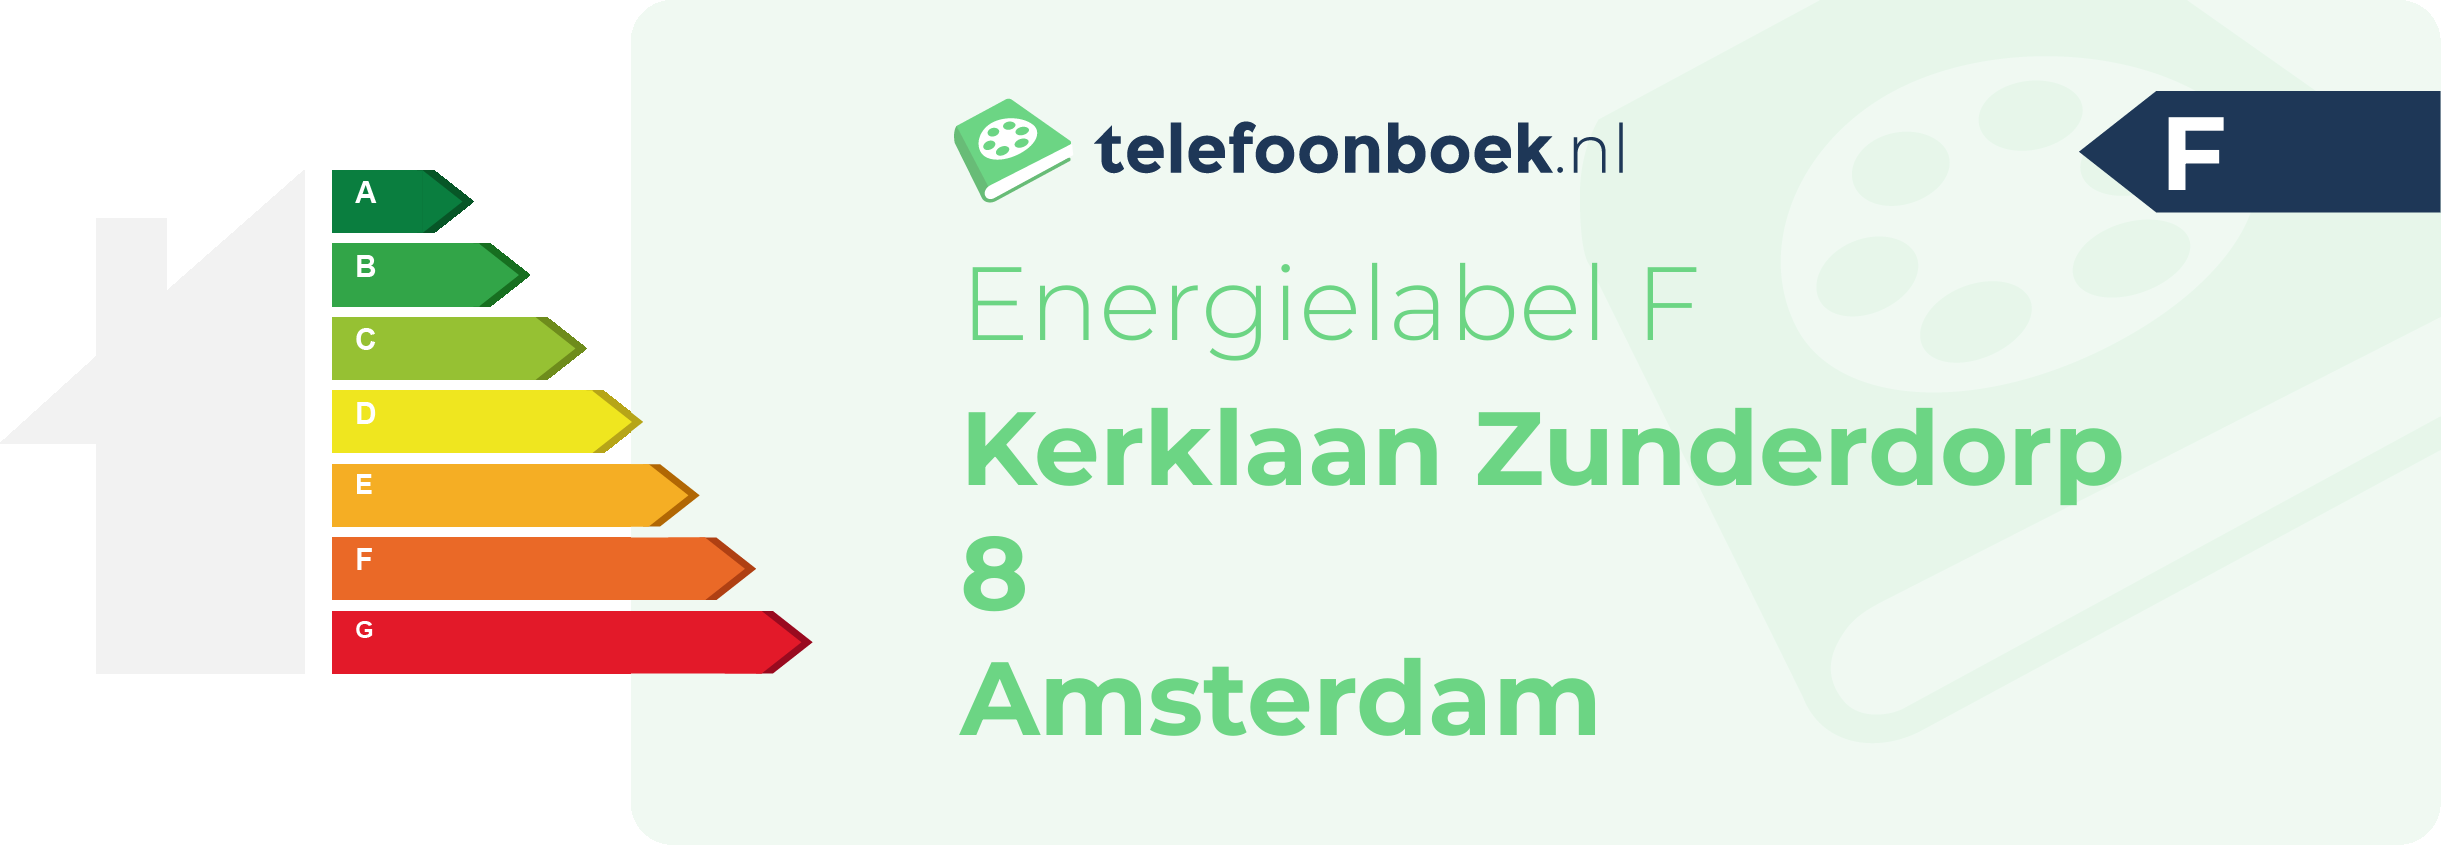 Energielabel Kerklaan Zunderdorp 8 Amsterdam